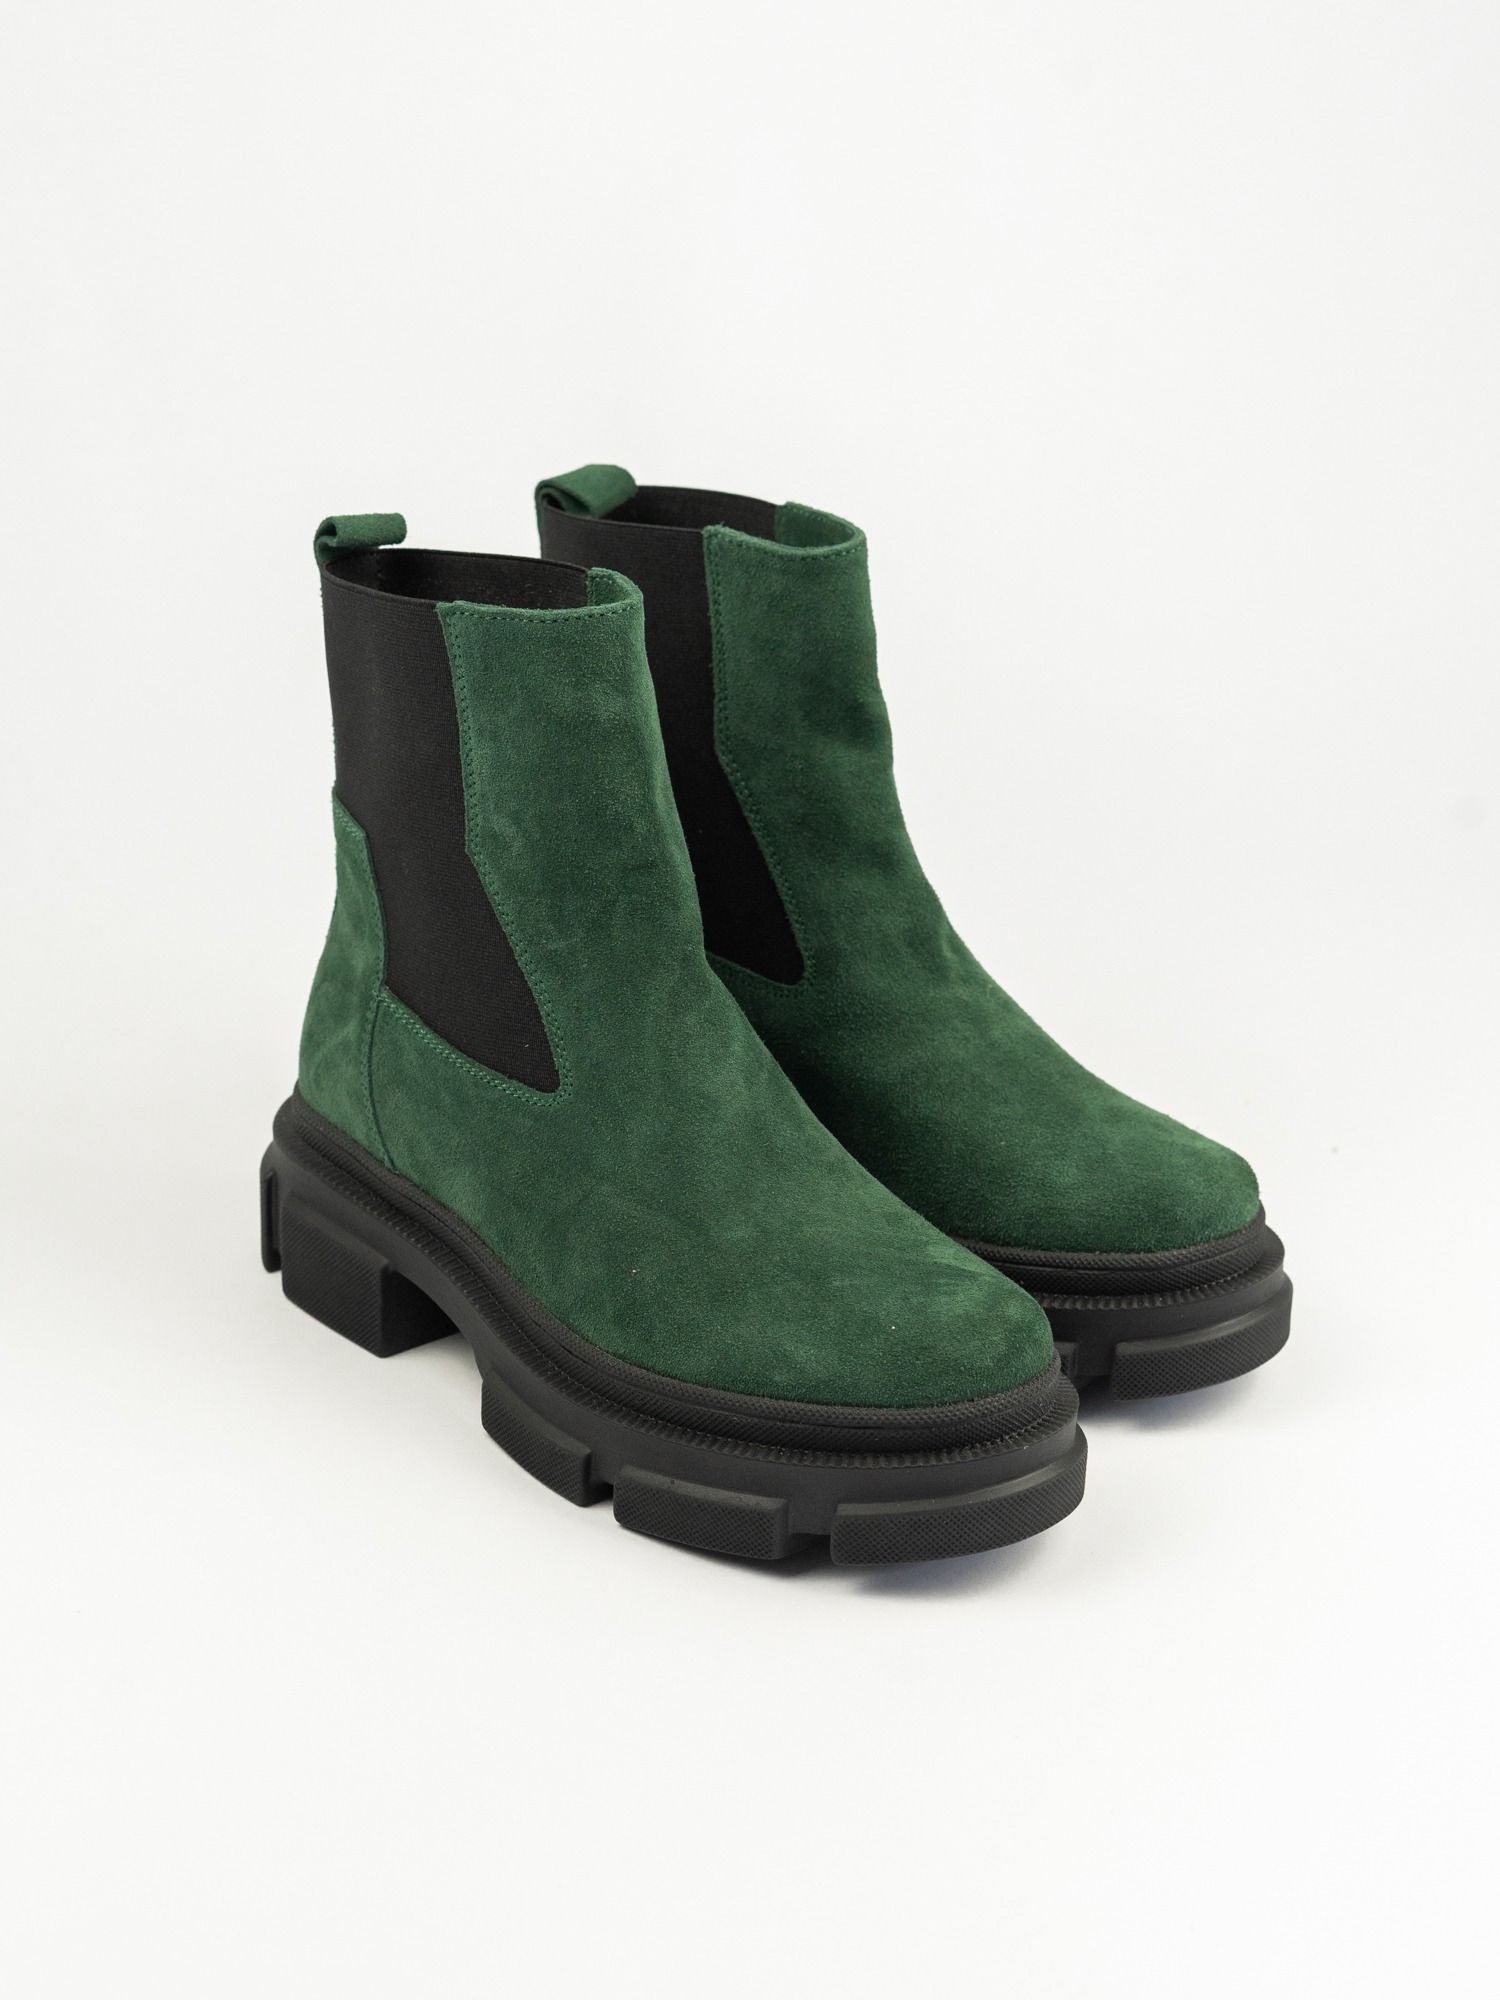 Женские ботинки  83-089-03В зеленый велюр ворсин